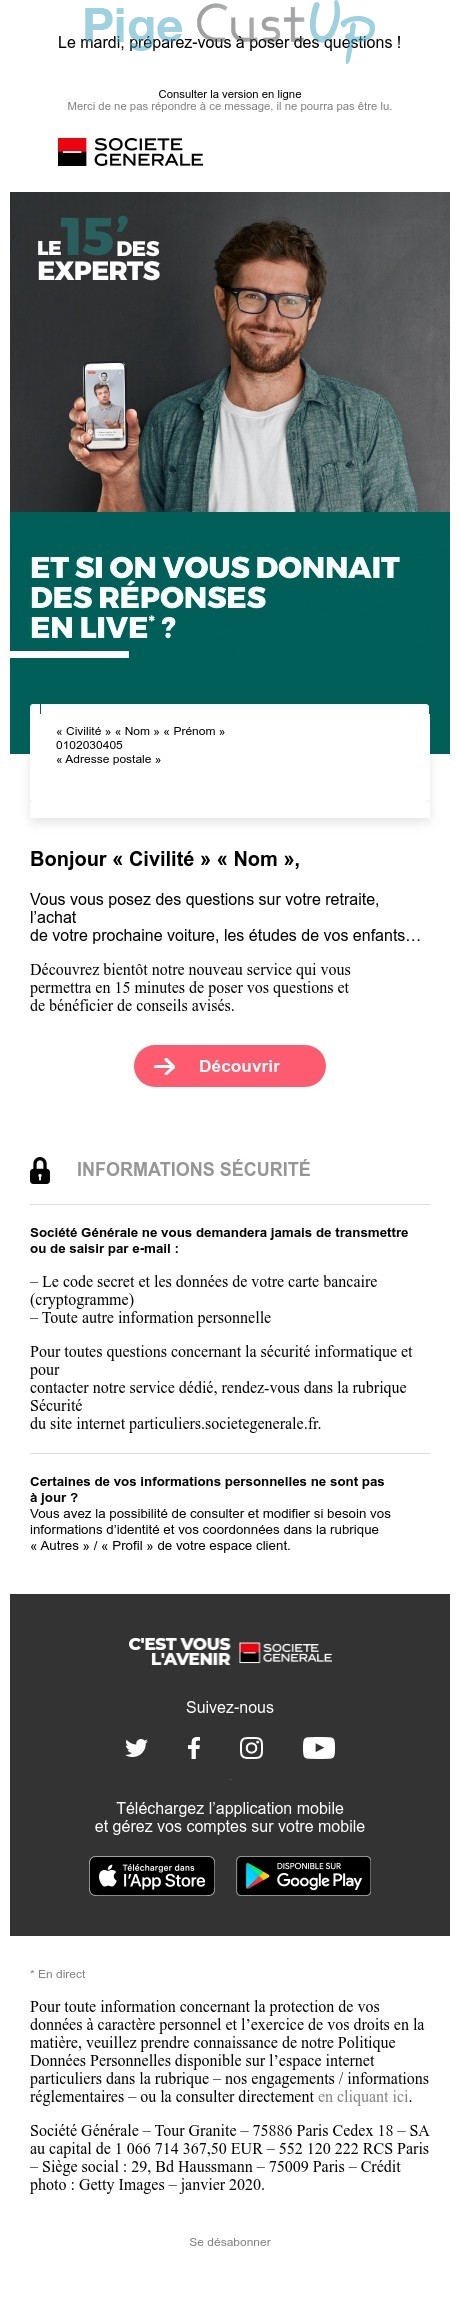 Exemple de Type de media  e-mailing - Société Générale - Marketing marque - Communication Services - Nouveaux Services